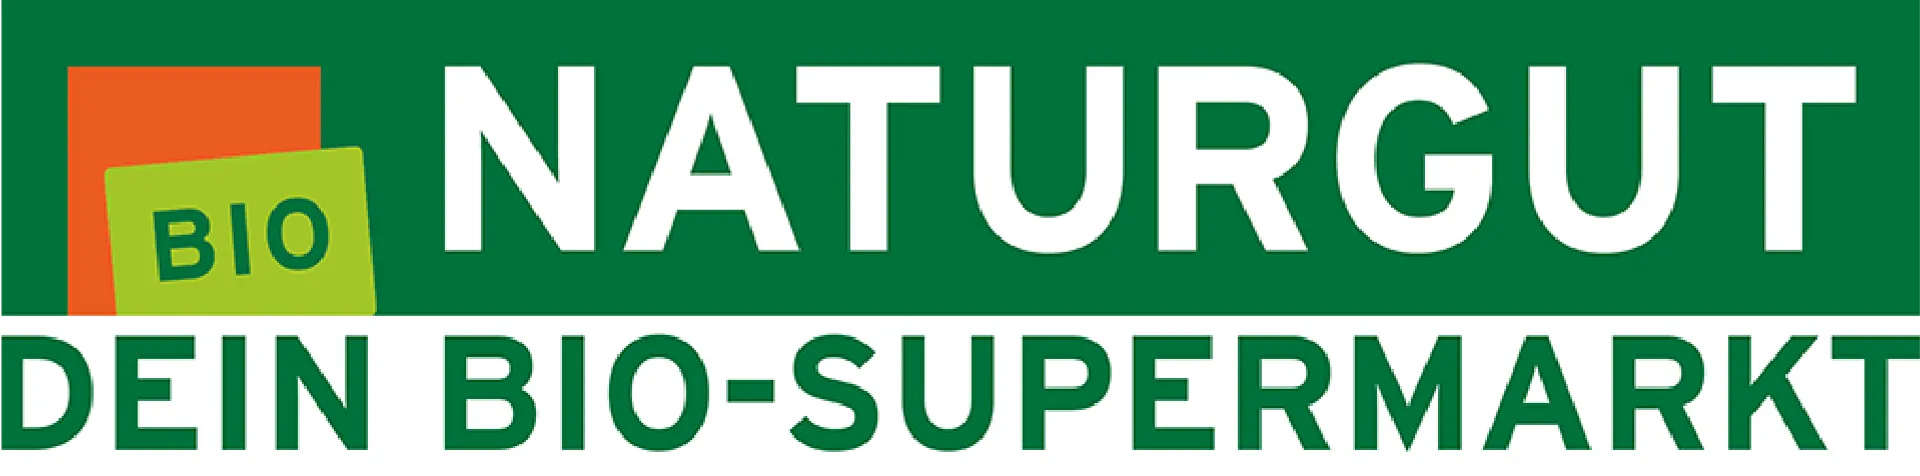 NATURGUT logo